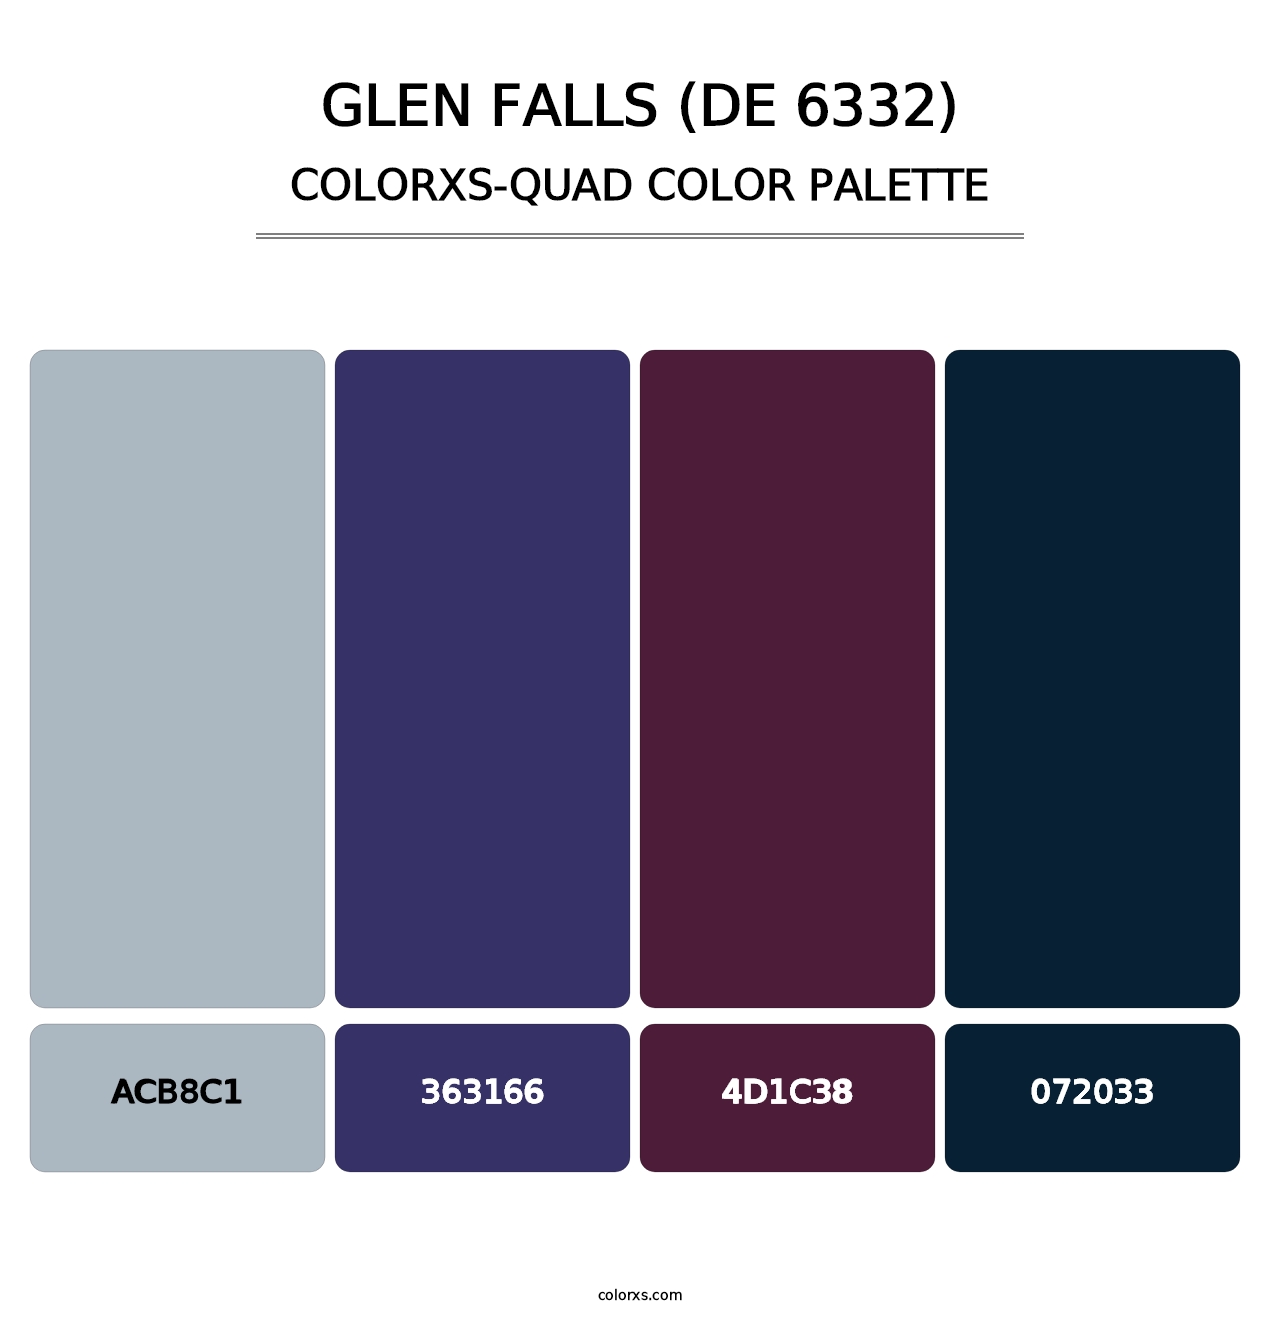 Glen Falls (DE 6332) - Colorxs Quad Palette